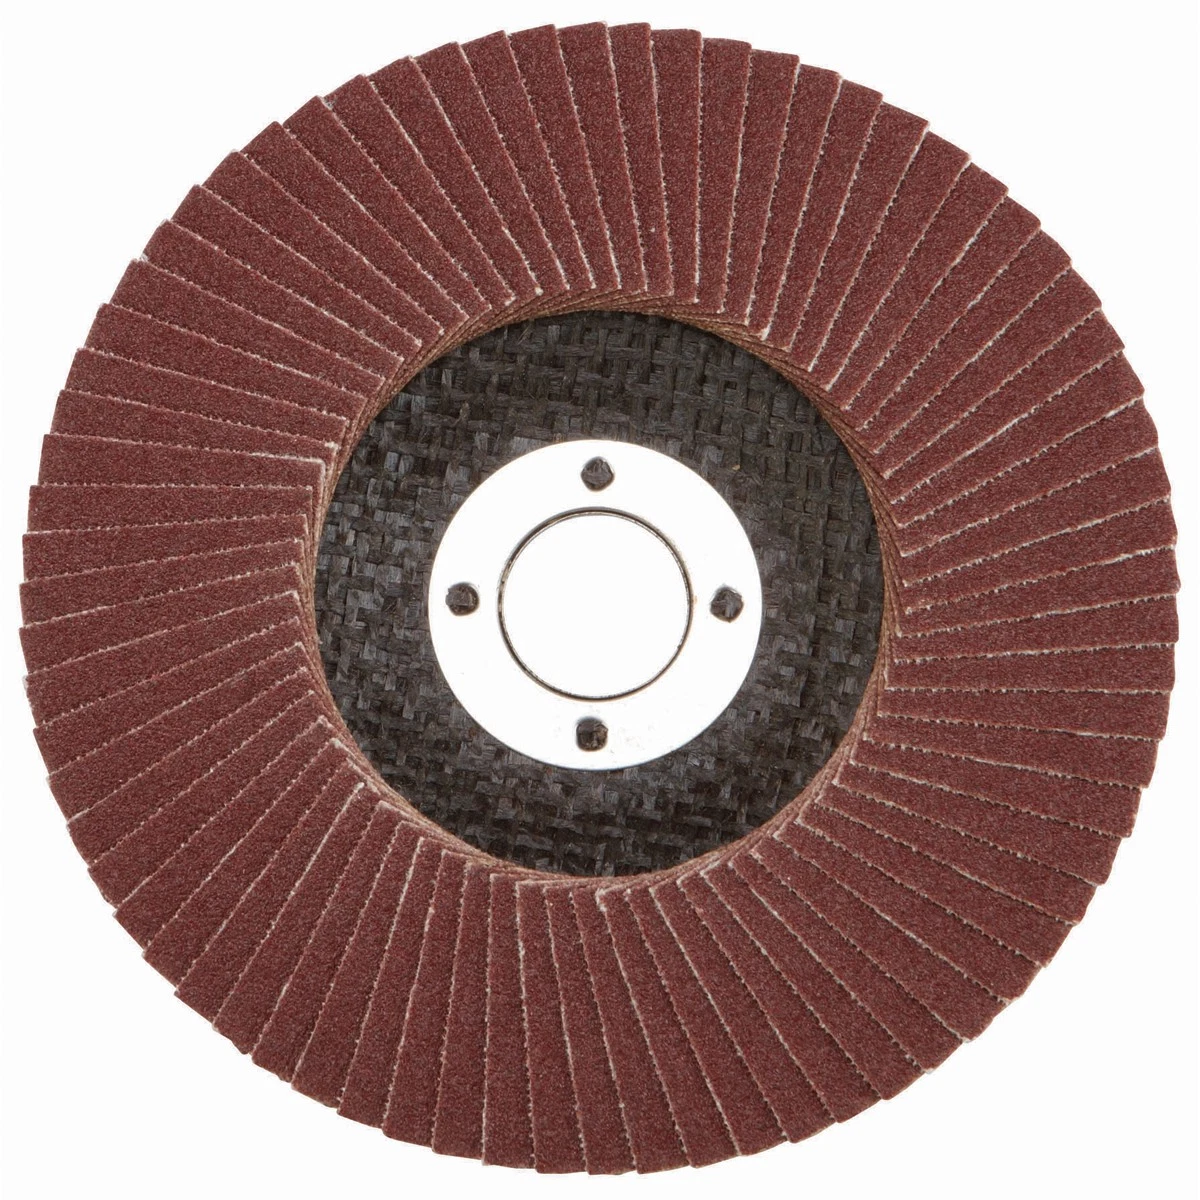 Aluminum Abrasive Flap Disc 115mm 40 Grit Grinding Wheel Disc for Grinding Weld Sanding